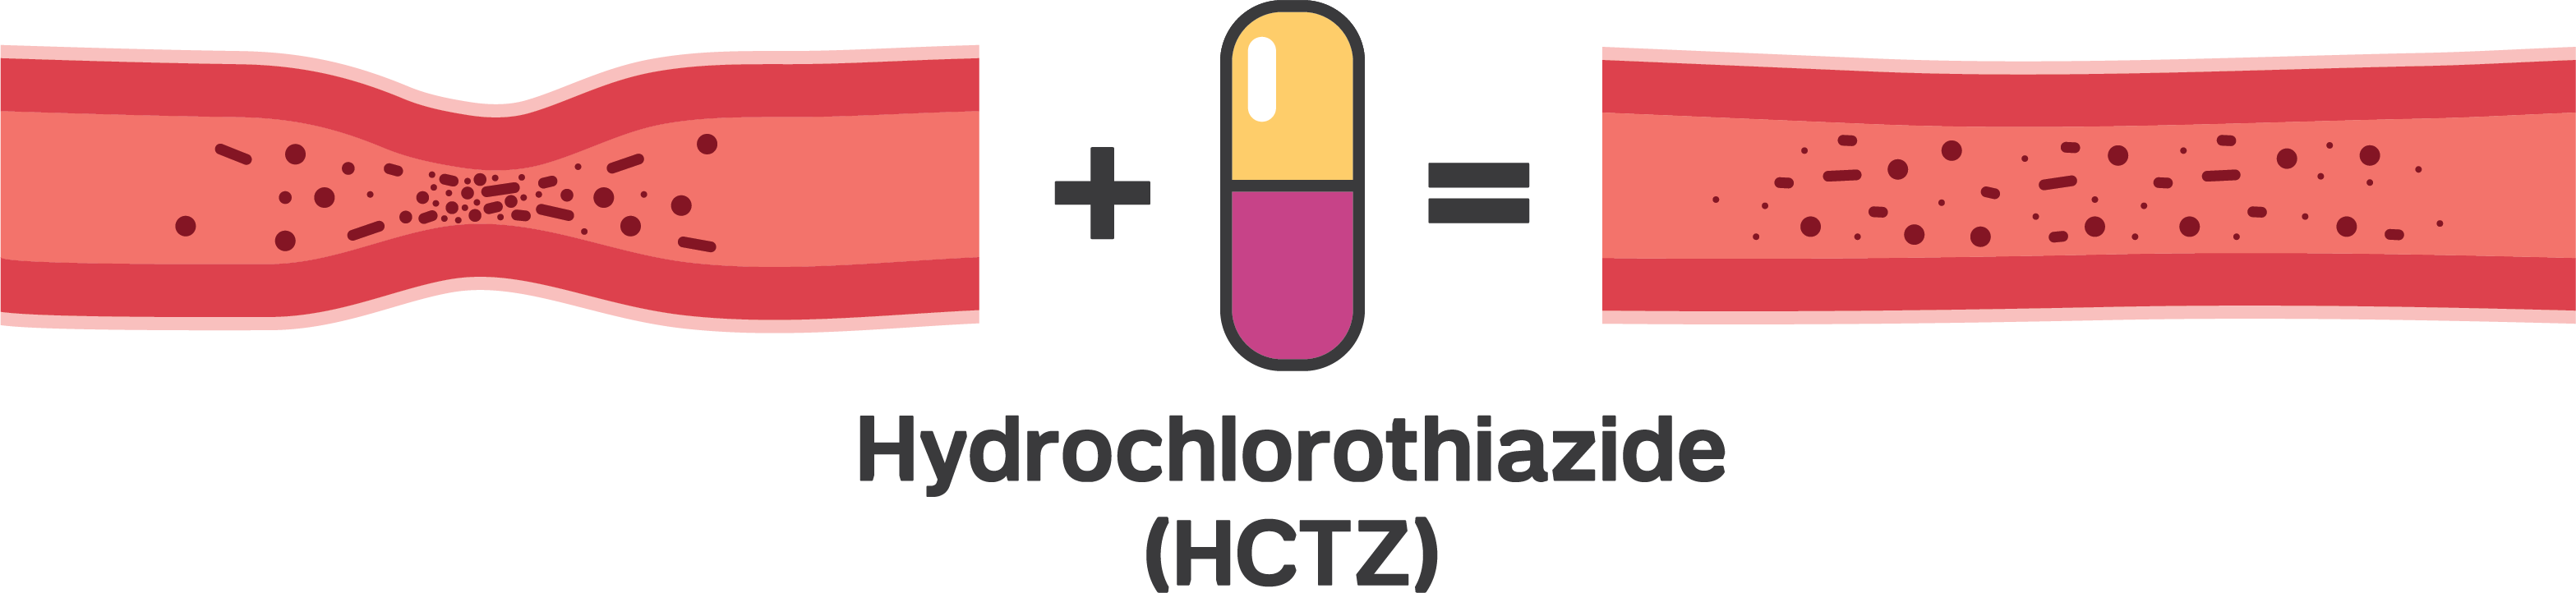 does hydrochlorothiazide cause high blood pressure